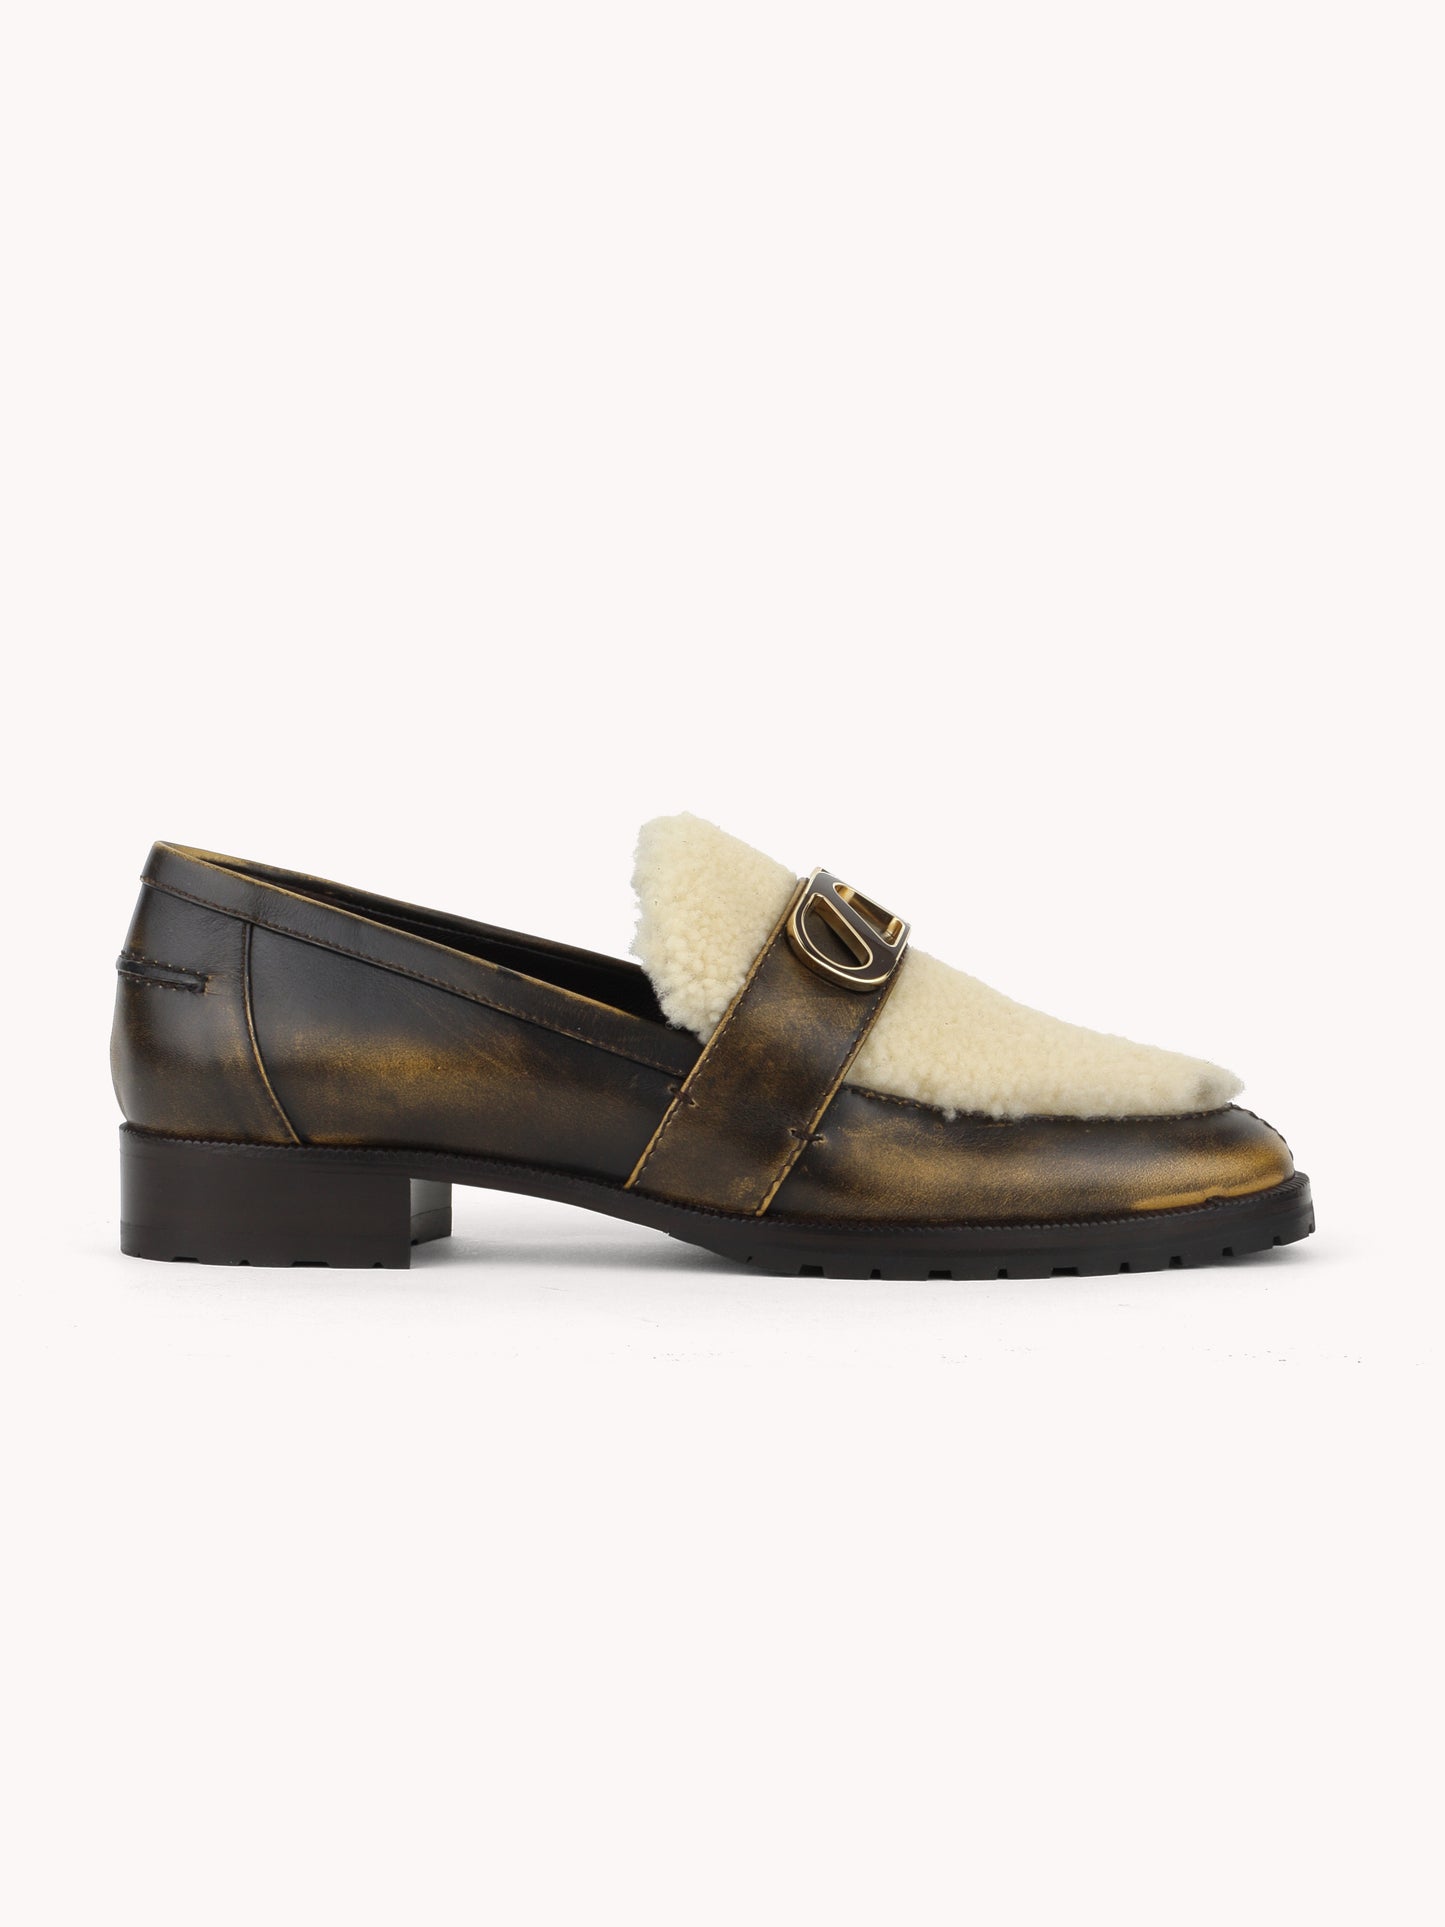 elegant Sheepskin golden brown brushed leather loafers skorpios